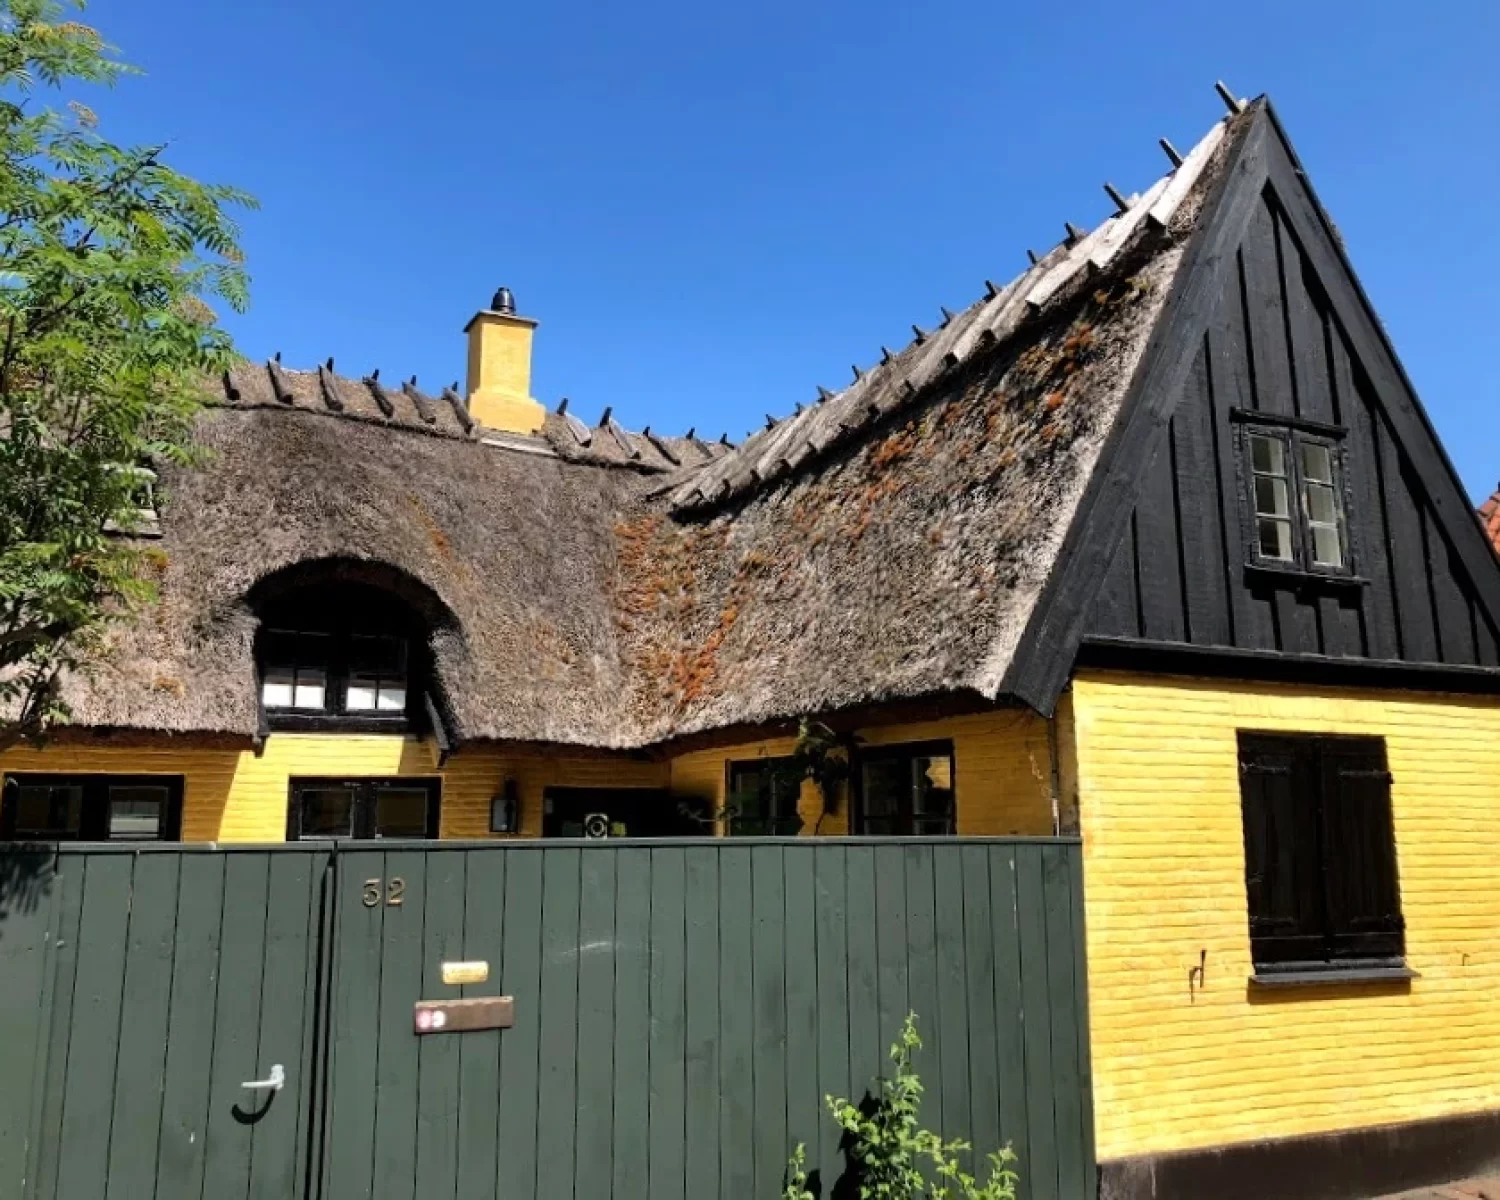 Casa típica amarilla y de madera del pueblo costero de Dragør